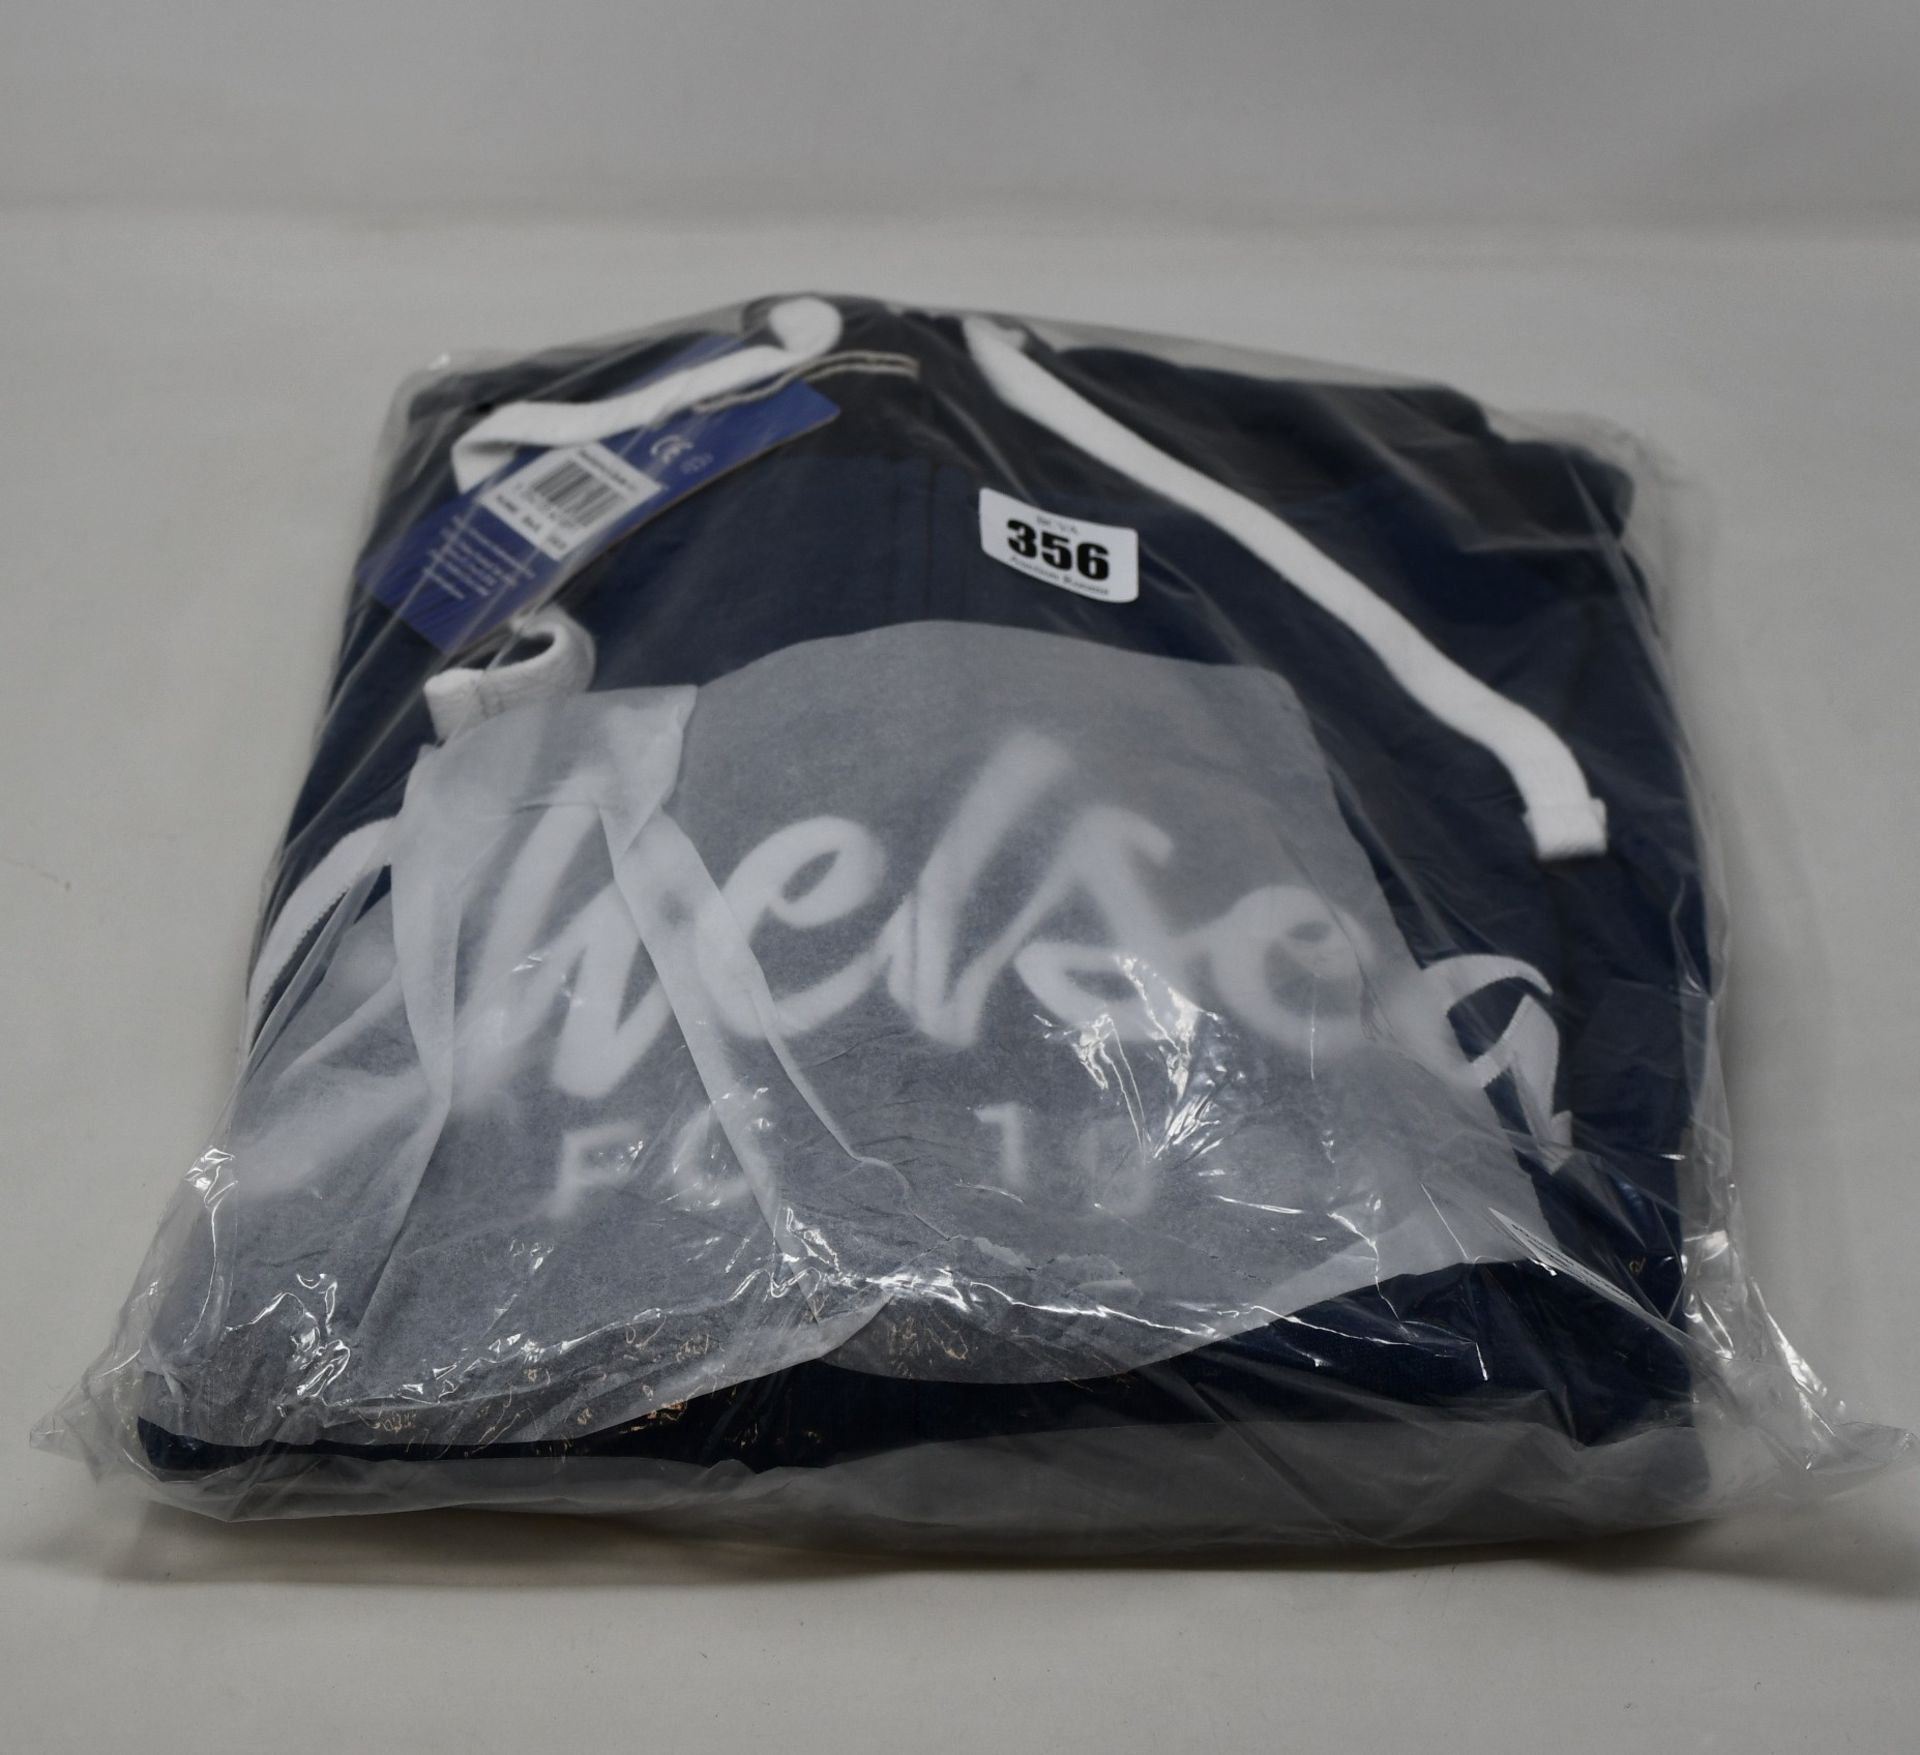 Three as new Official Chelsea Football Club script hoodies (All XL - RRP £45 each).